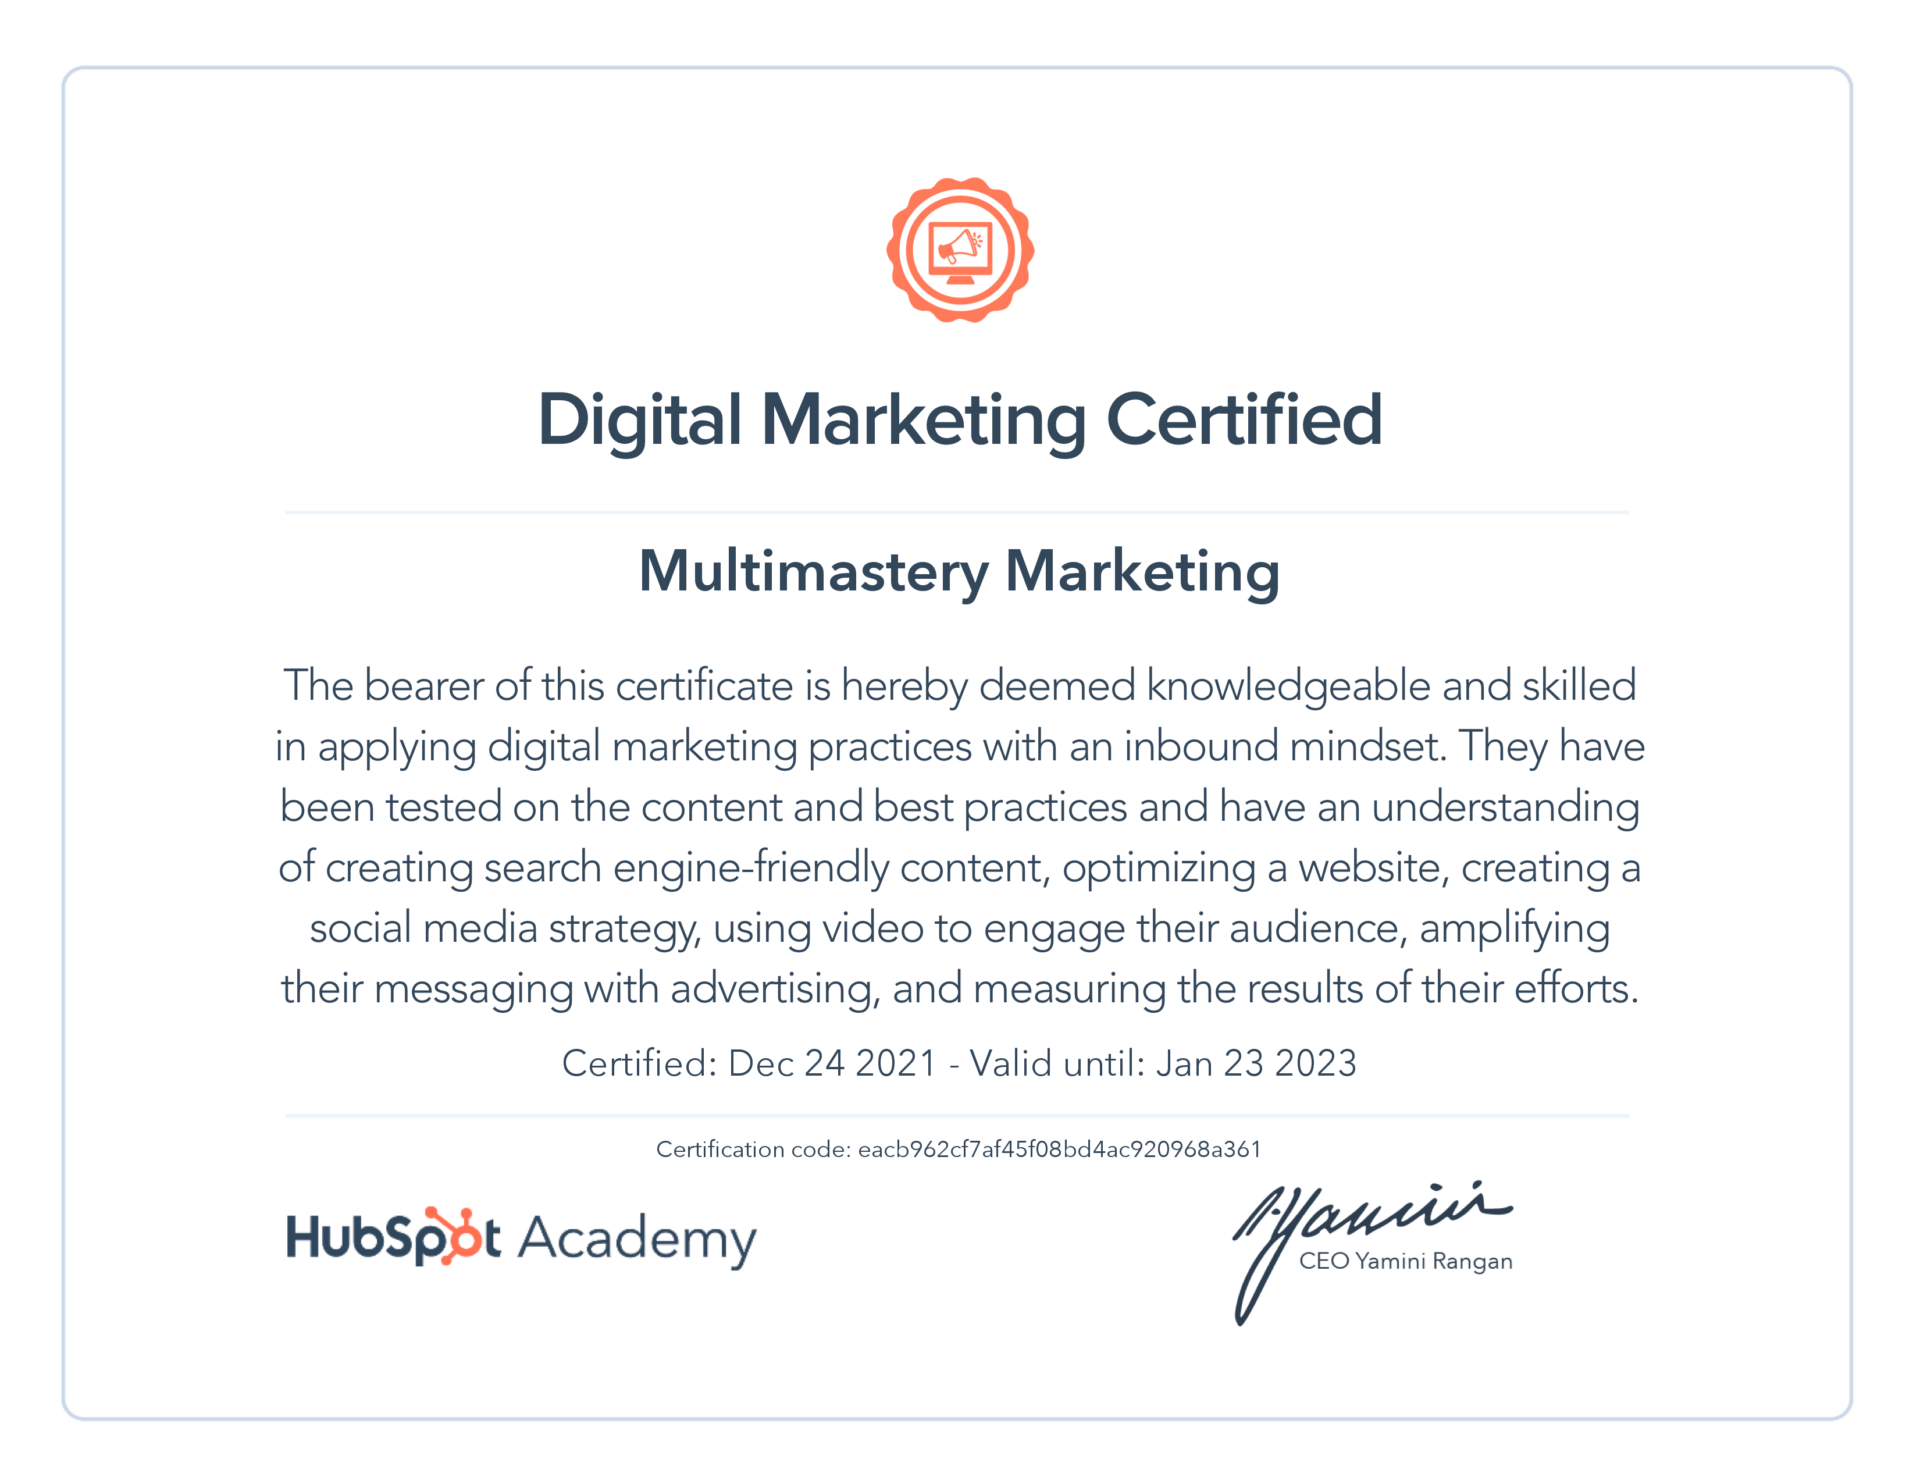 Multimastery Marketing - HubSpot Academy Digital Marketing Certification